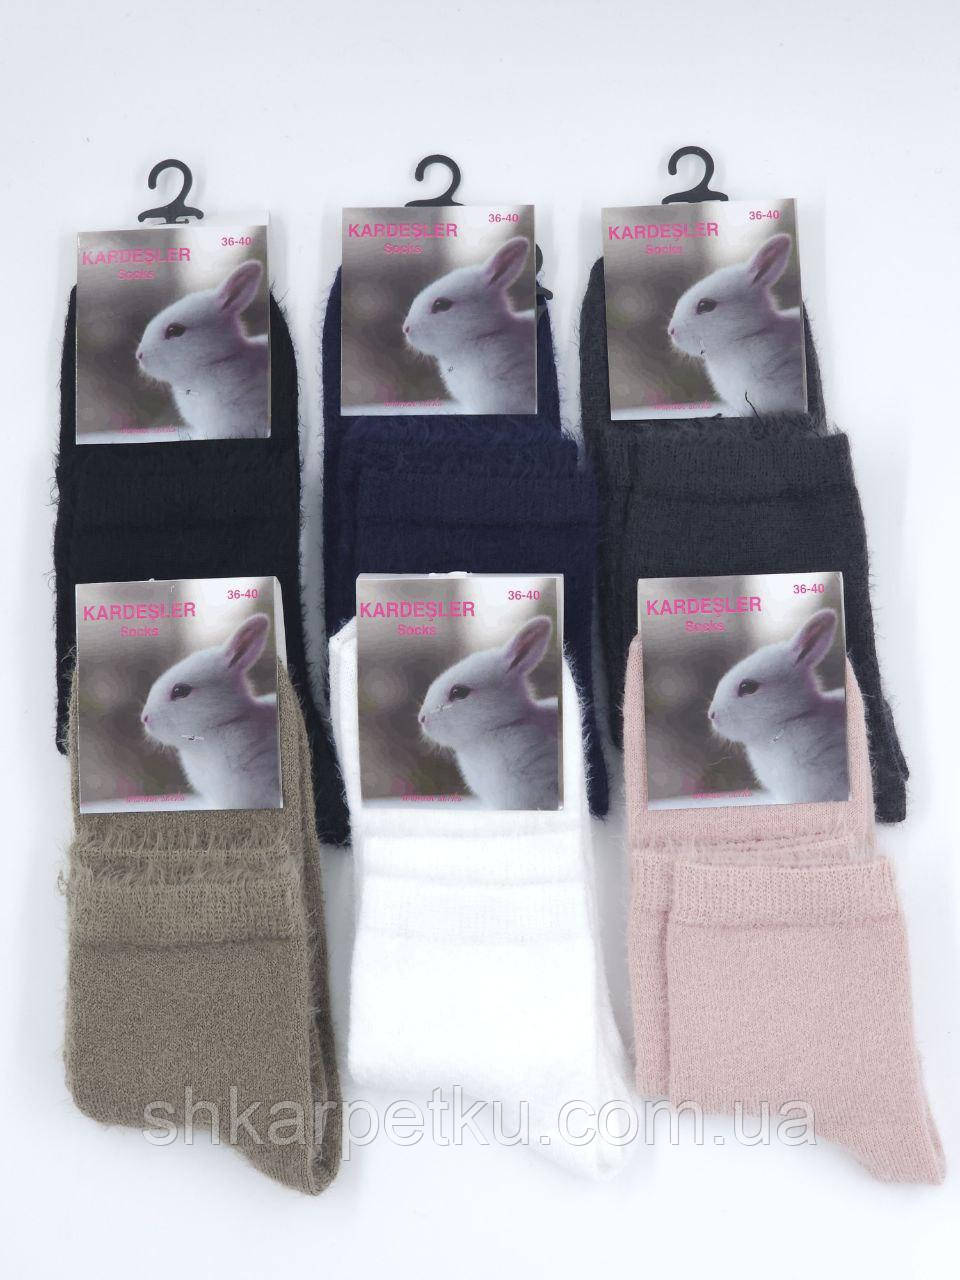 Жіночі вовняні шкарпетки Kardesler з кролика середньої висоти,розмір 36-40, мікс кольорів, 6 пар/уп